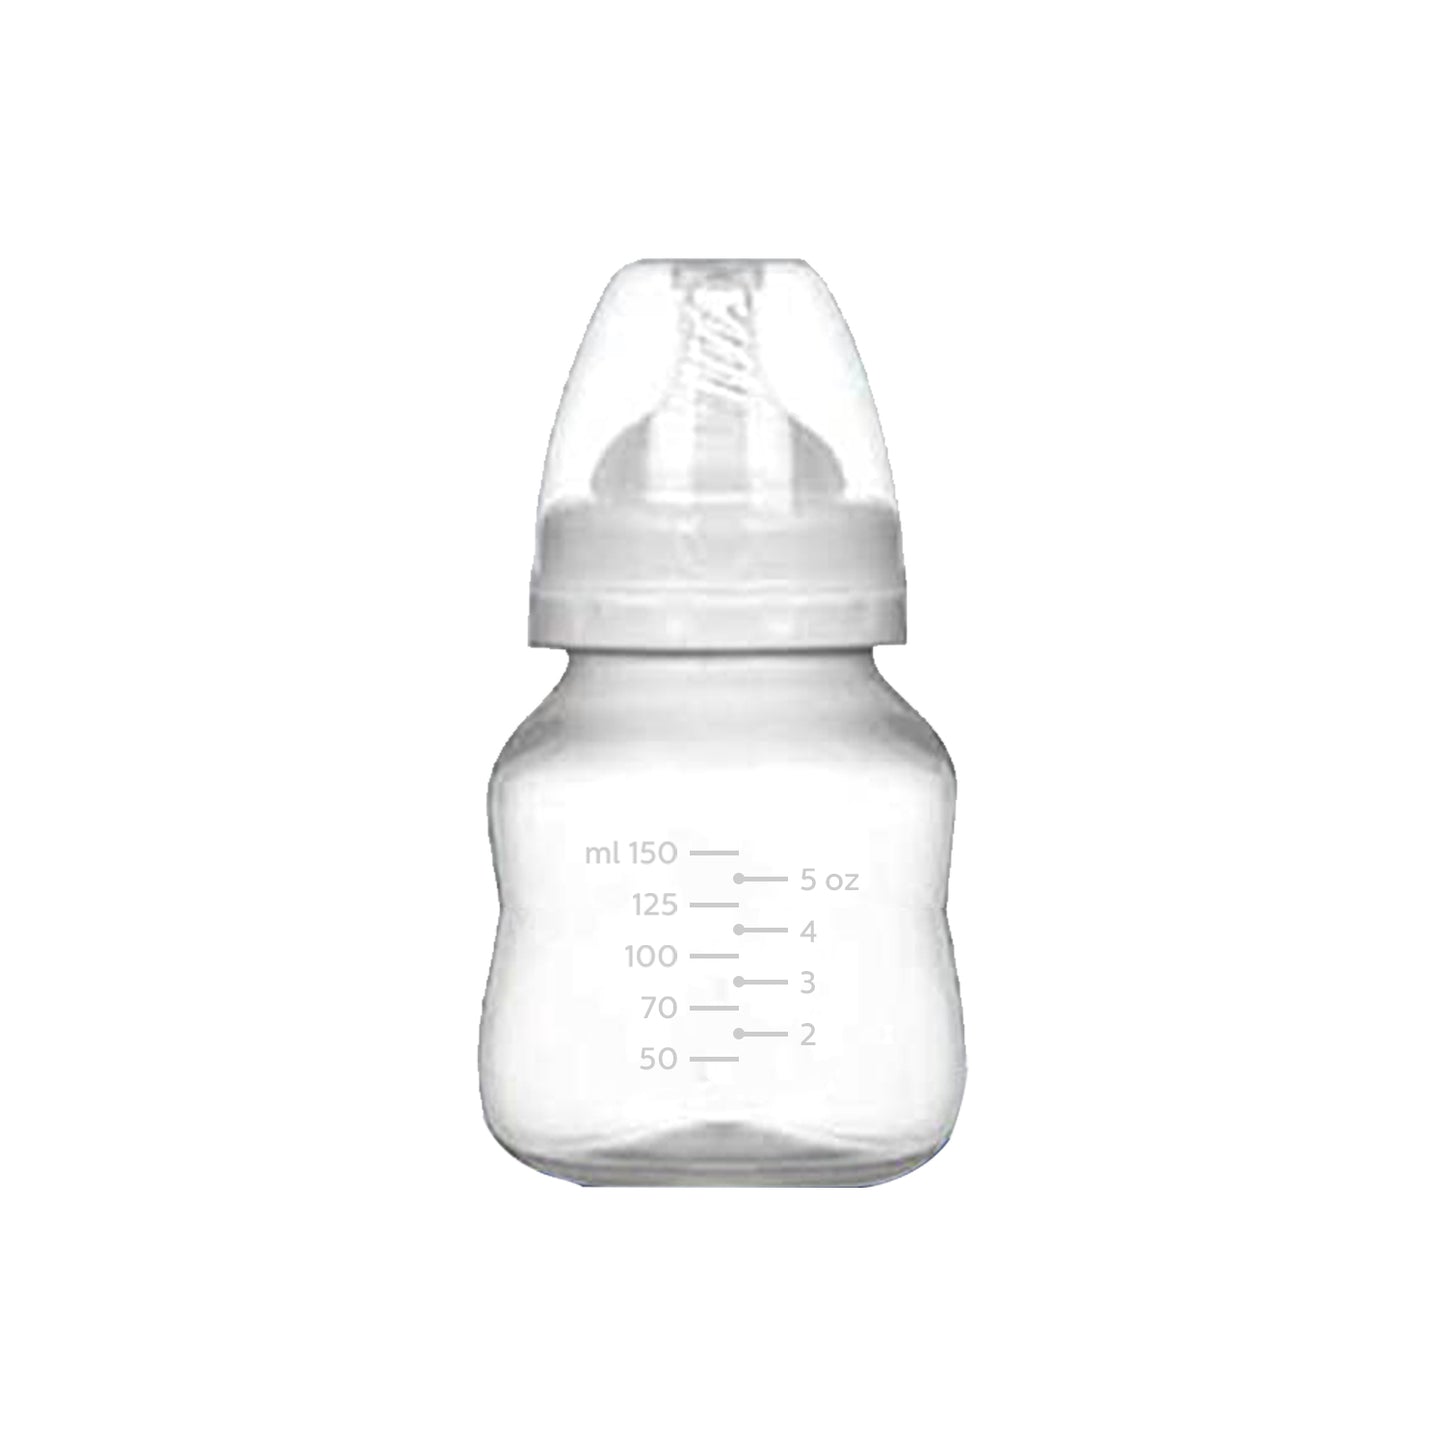 Baby Feeding Bottle for Newborns & Infants